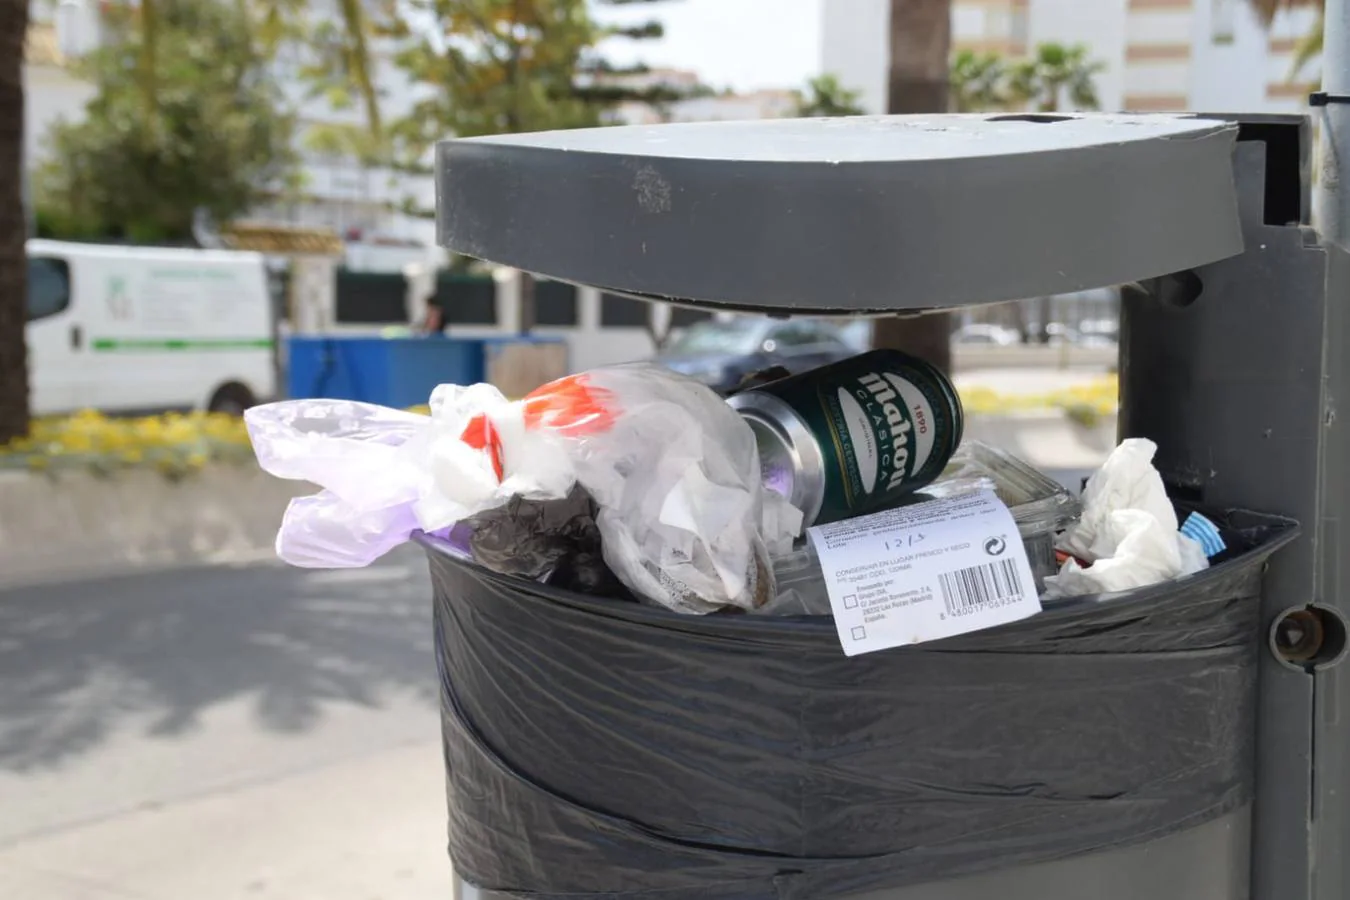 FOTOS: Lamentable estado de la calles de El Puerto repletas de basura